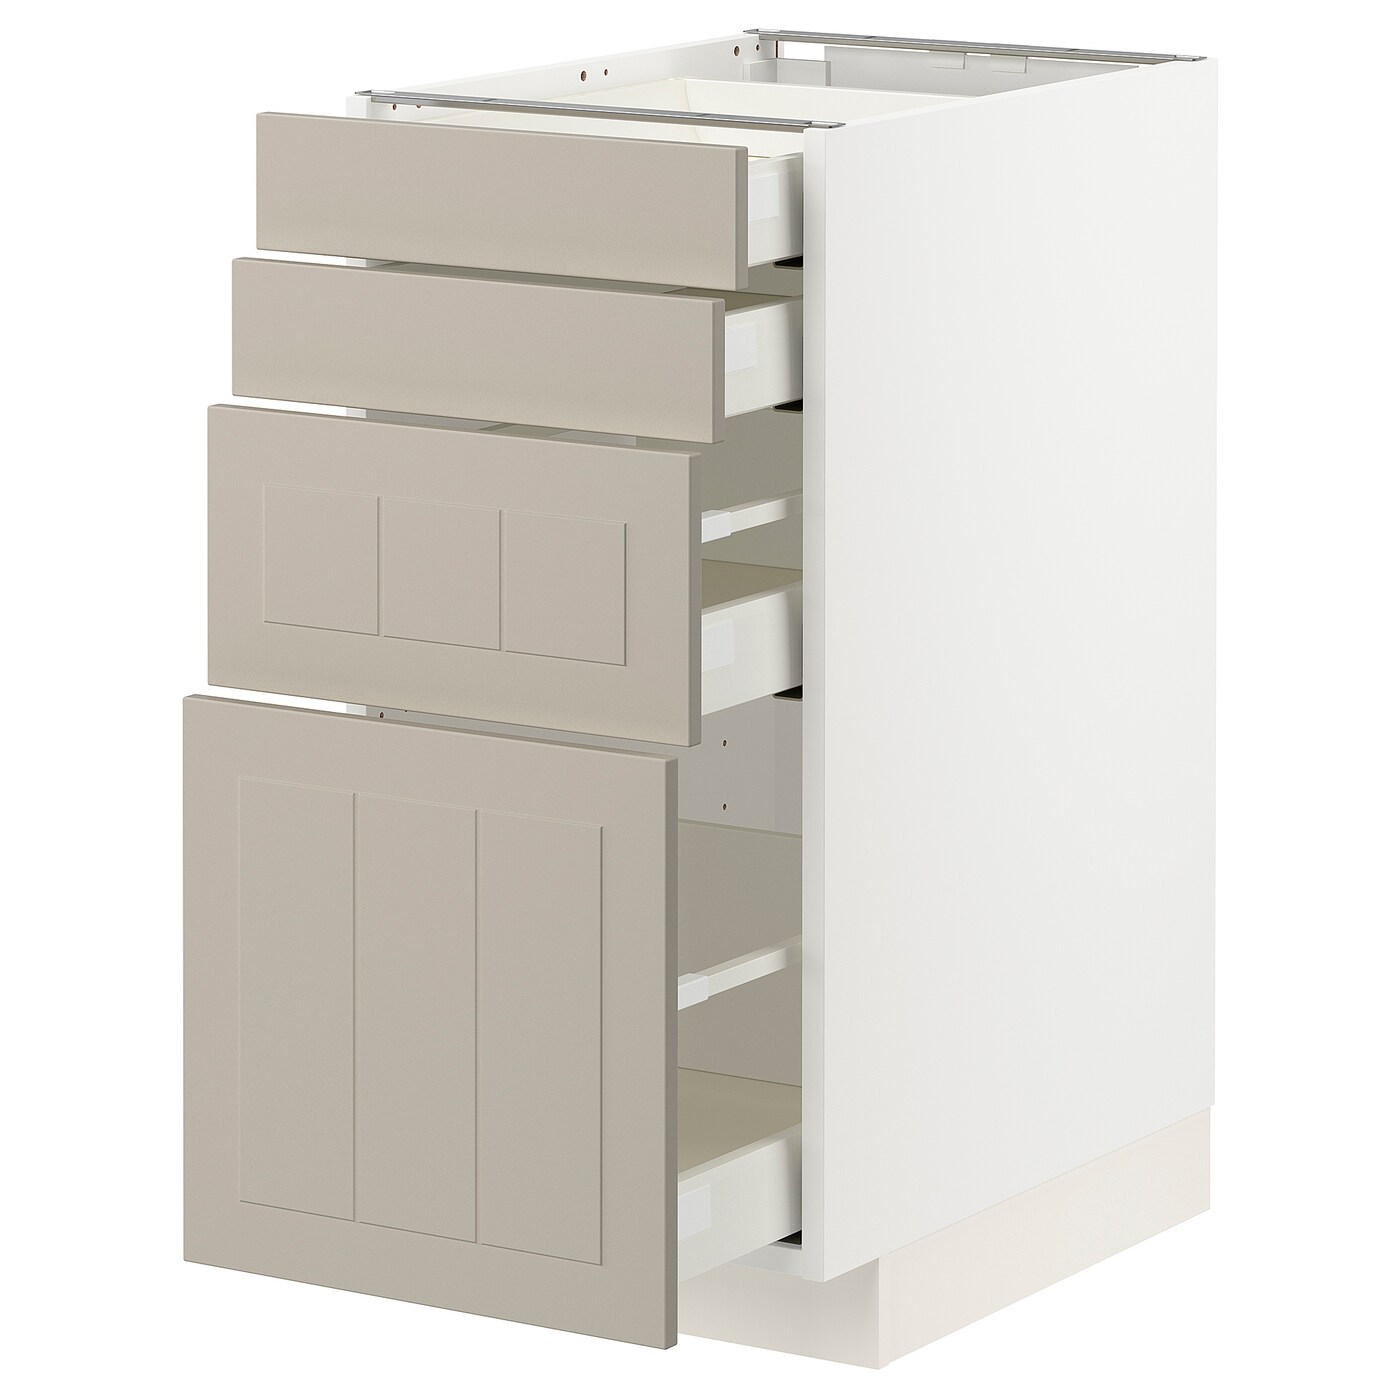 Напольный кухонный шкаф  - IKEA METOD MAXIMERA, 88x61,9x40см, белый/бежевый, МЕТОД МАКСИМЕРА ИКЕА